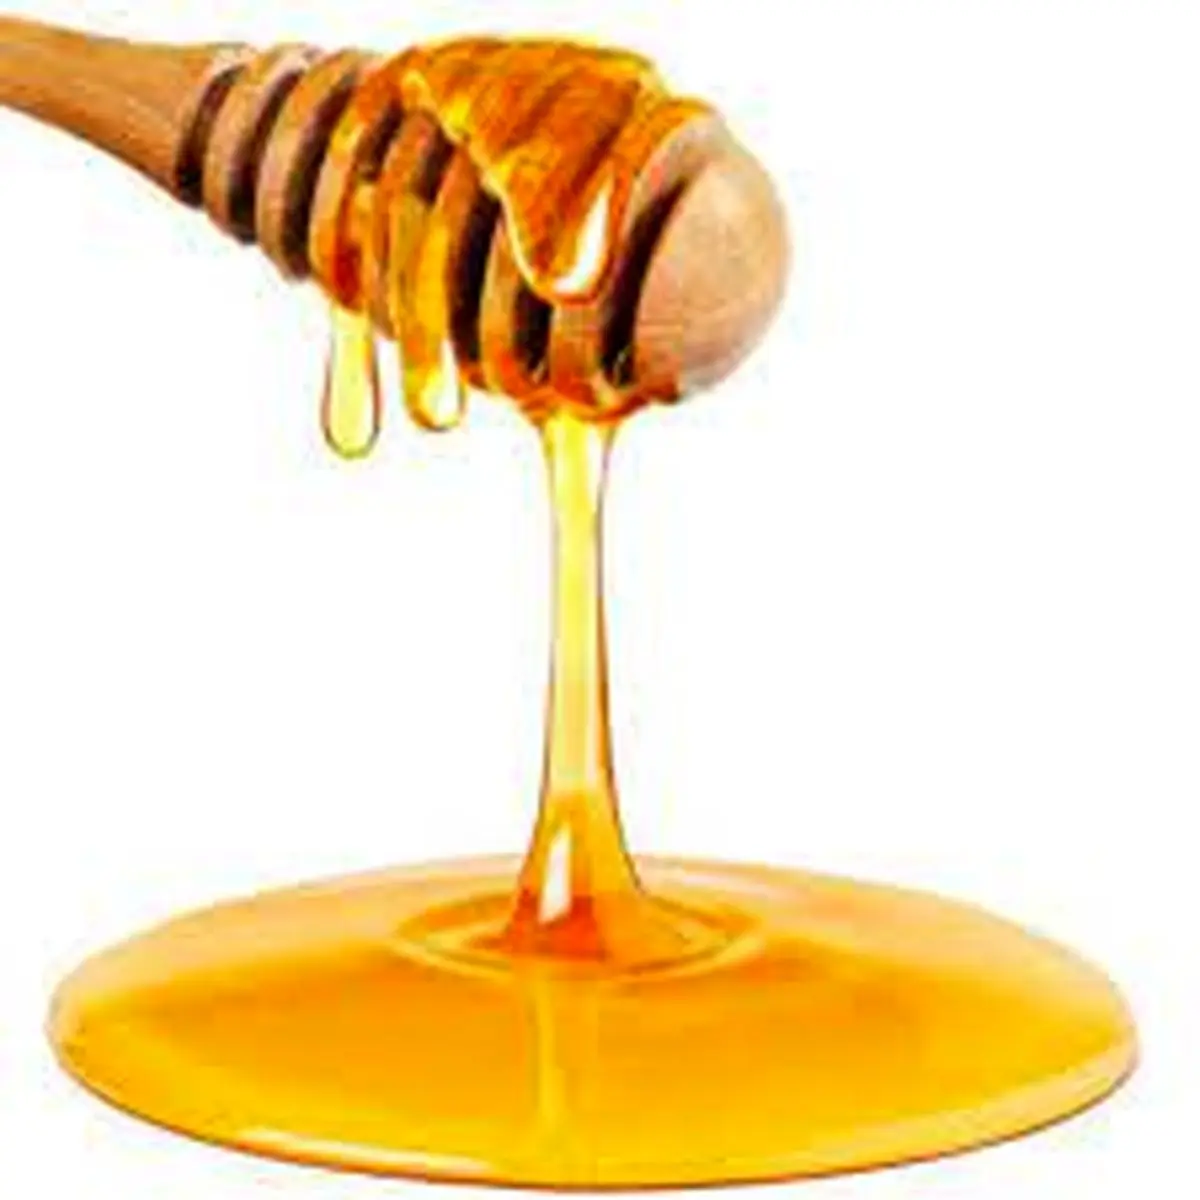  خواص درمانی عسل برای بدن | عسل لاغر میکند؟